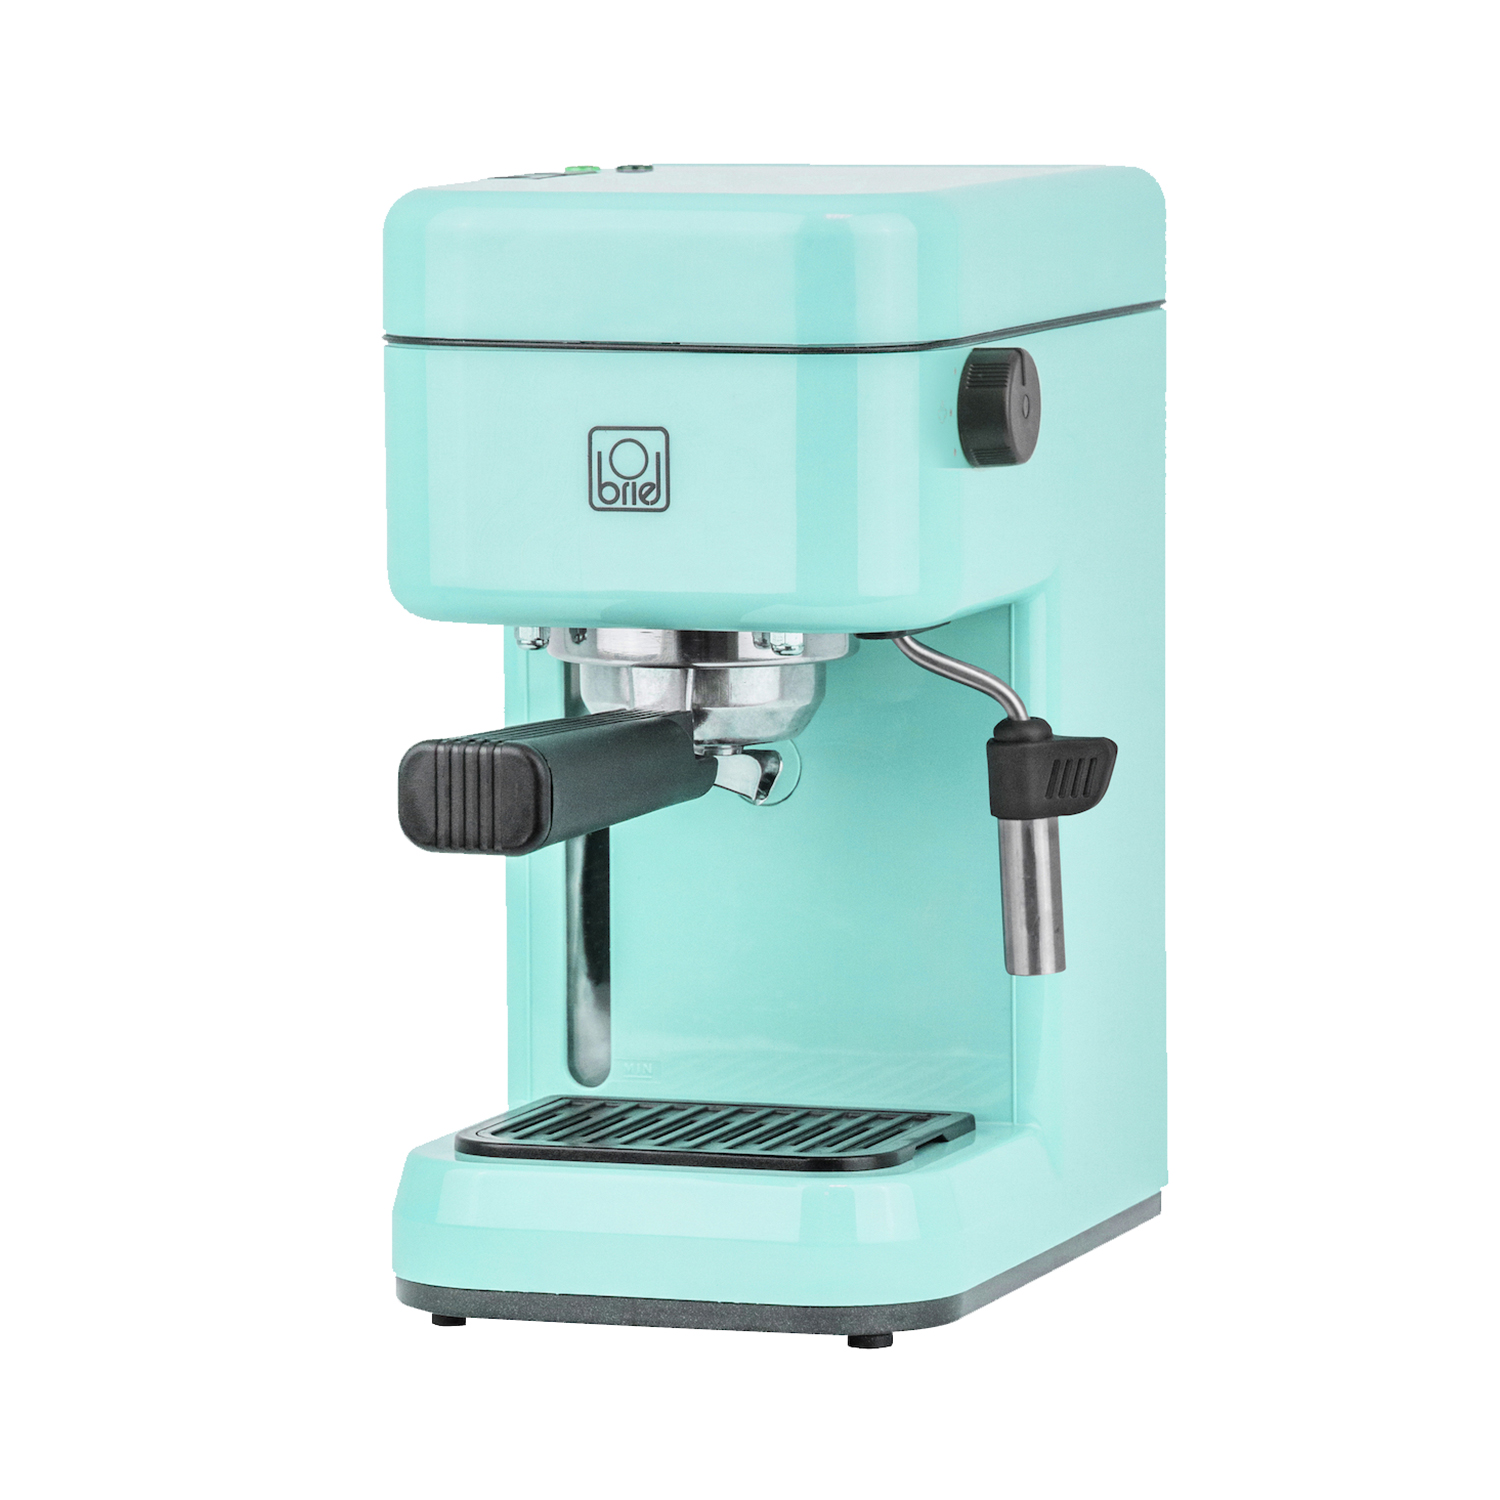 Maquina-cafe-espresso-B14-BLUE-1.jpg